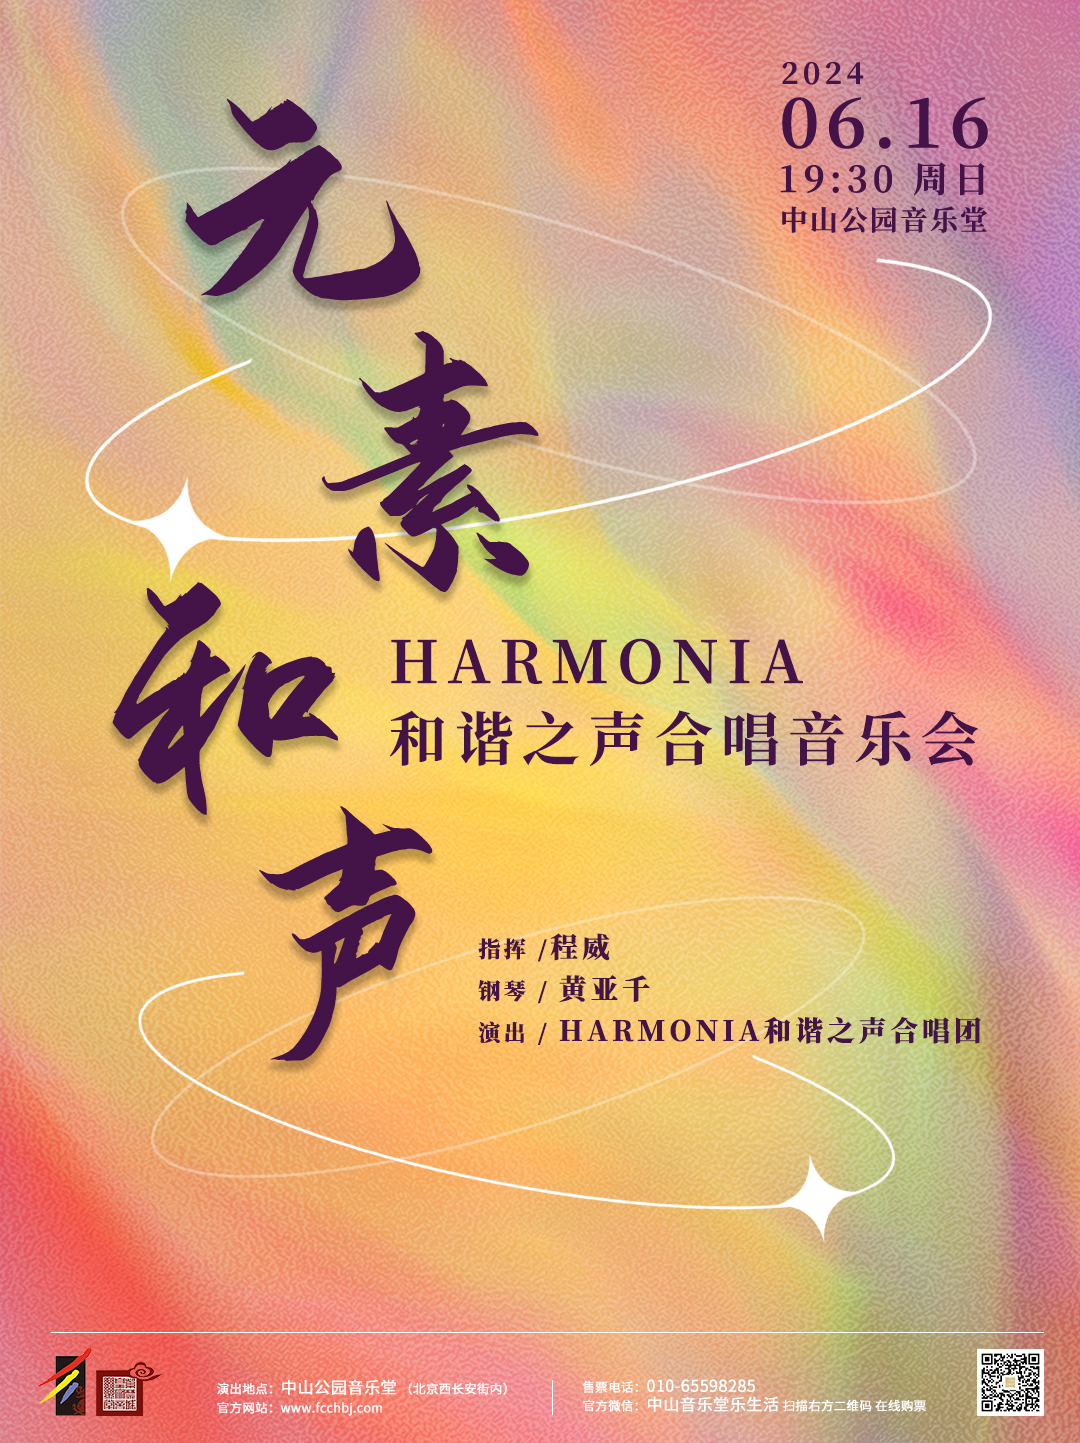 【北京站】元素和声—Harmonia和谐之声合唱音乐会